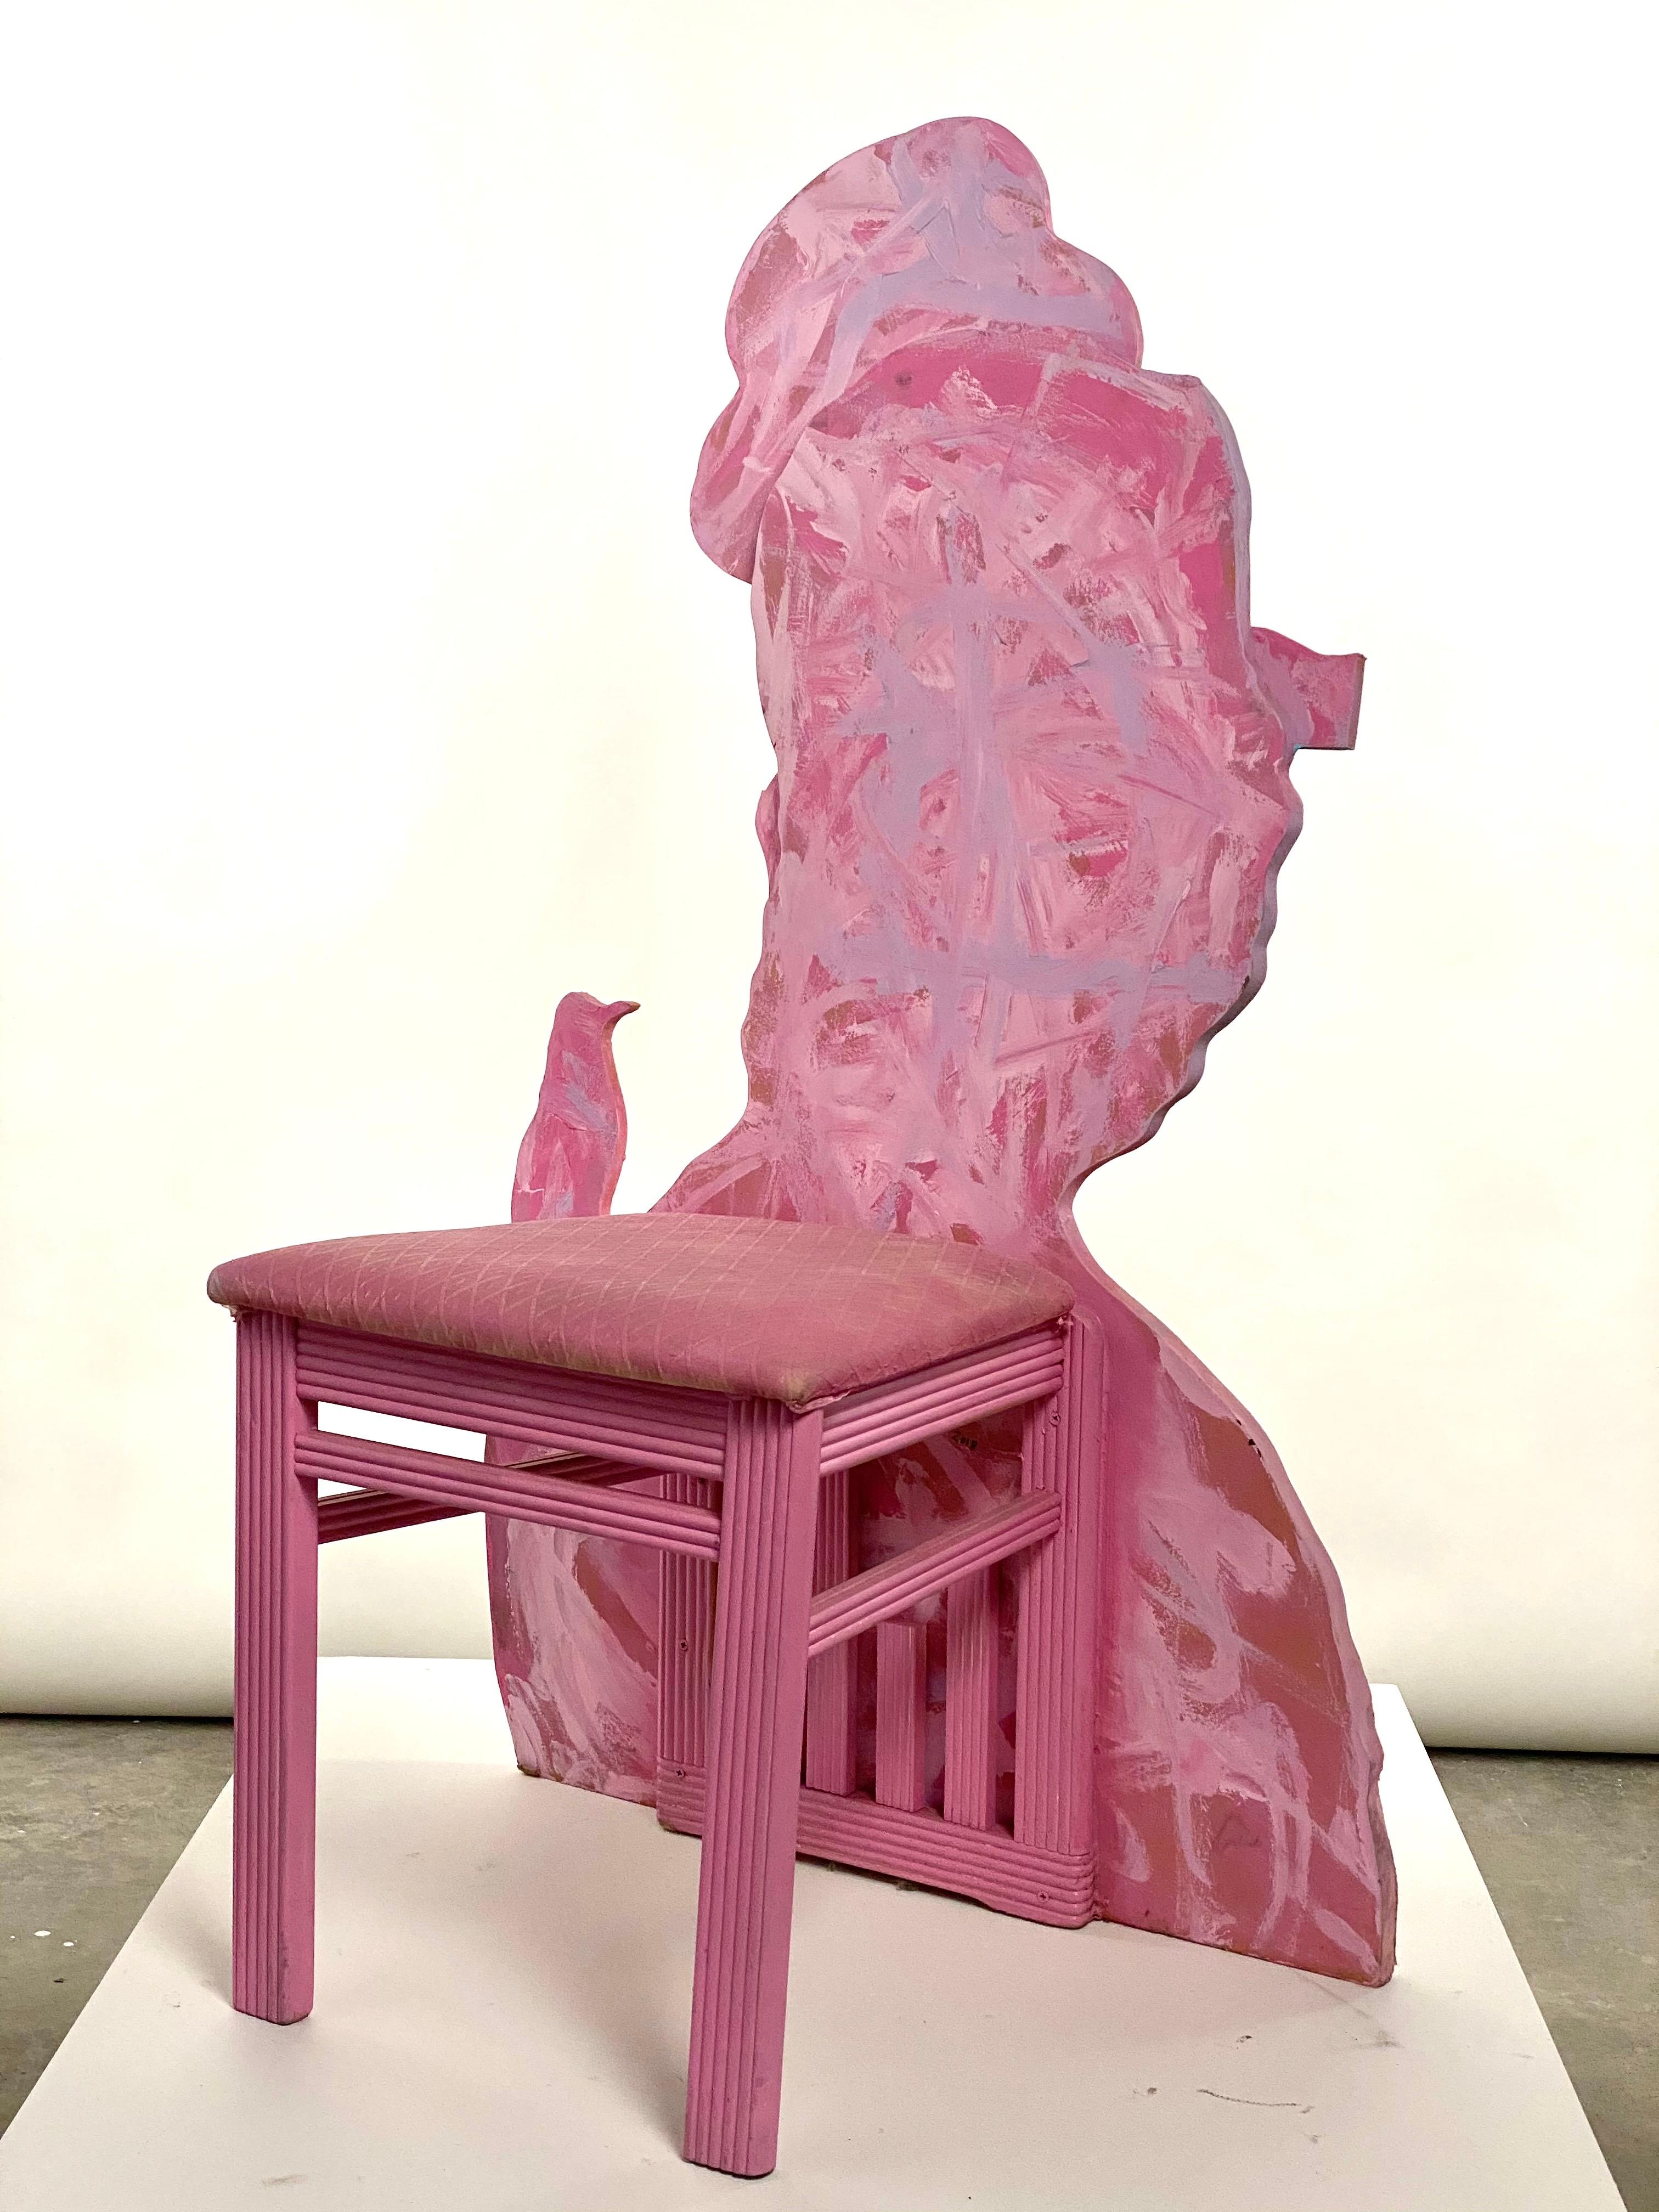 Il s'agit d'une nouvelle œuvre de Mattia Biagi
Chaise sculpturale avec collage sur bois.
 